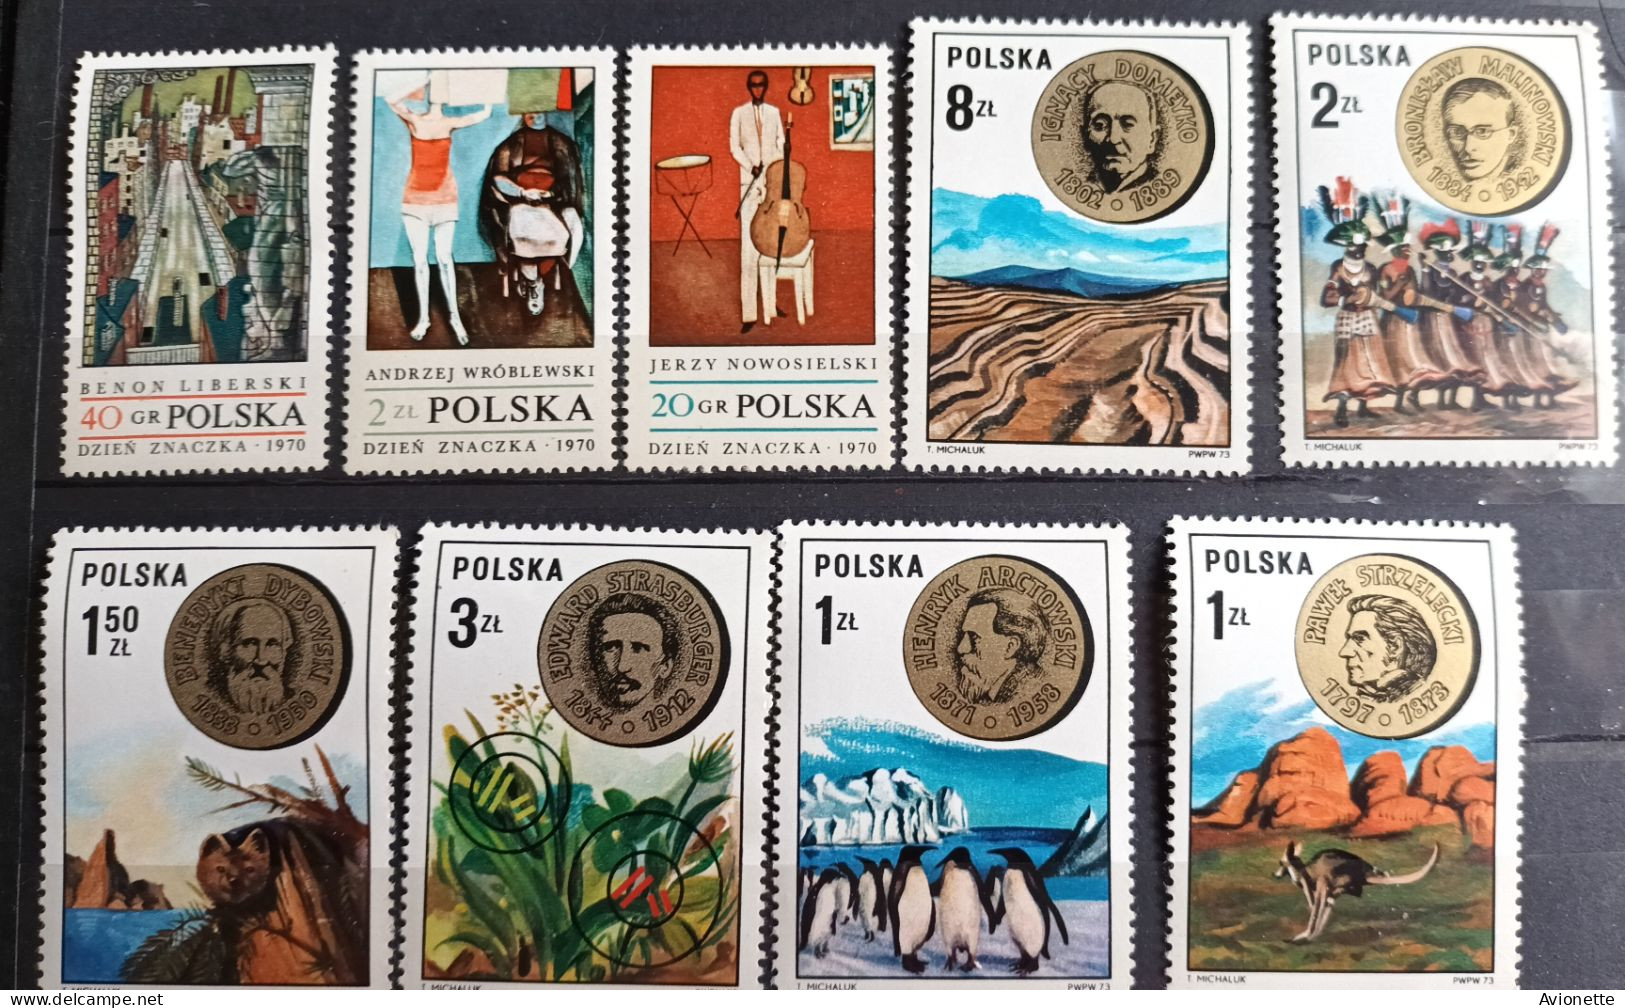 Polska Années 60/70 (42 timbres neufs)